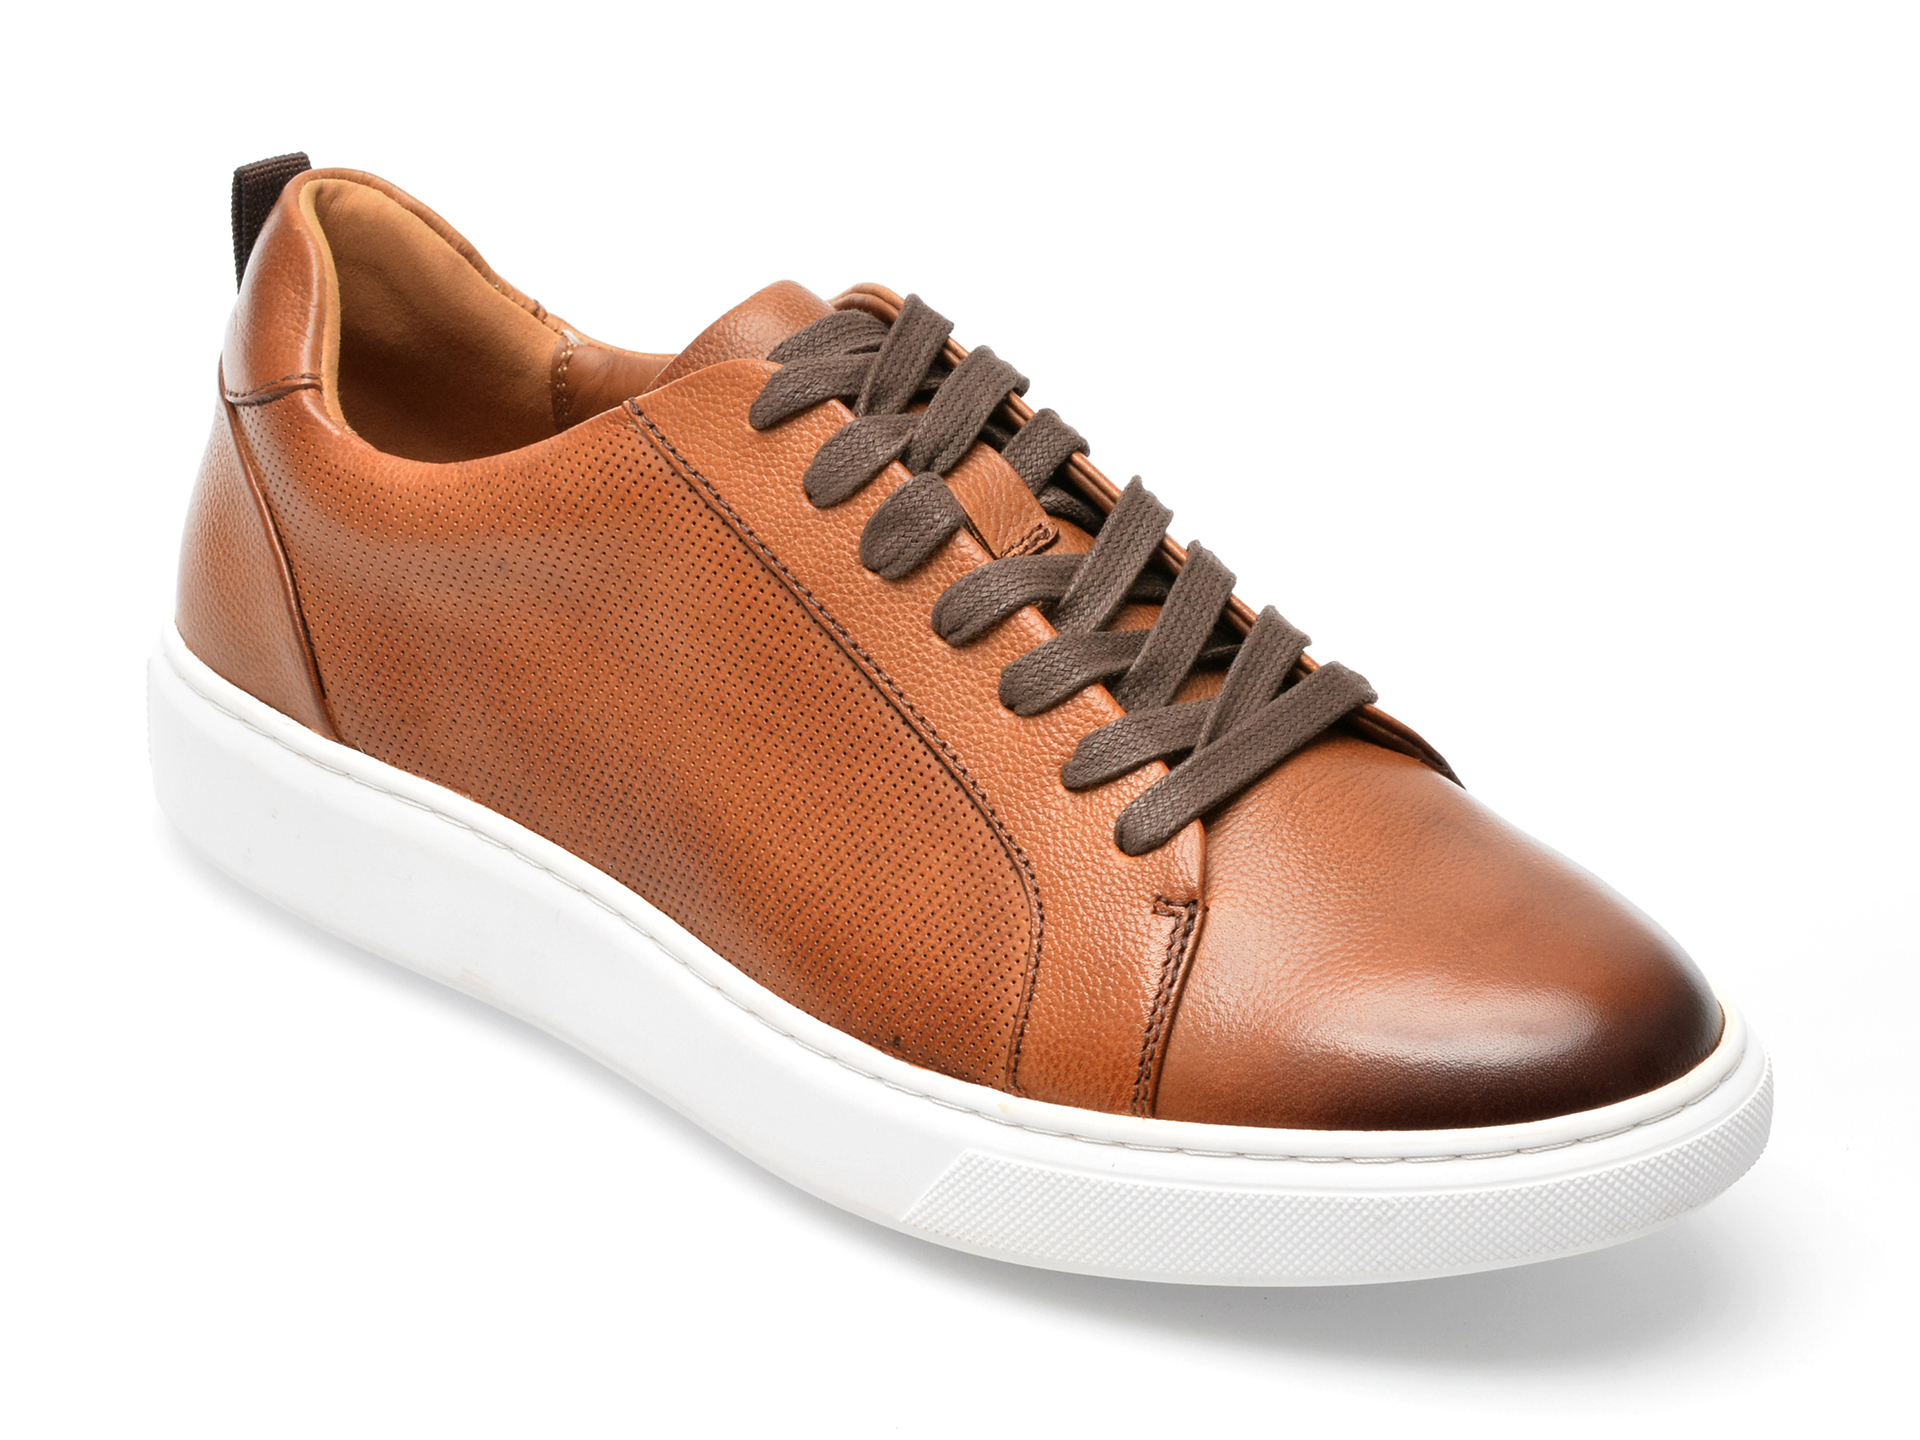 Pantofi sport ALDO maro, HOLMES220, din piele naturala Aldo